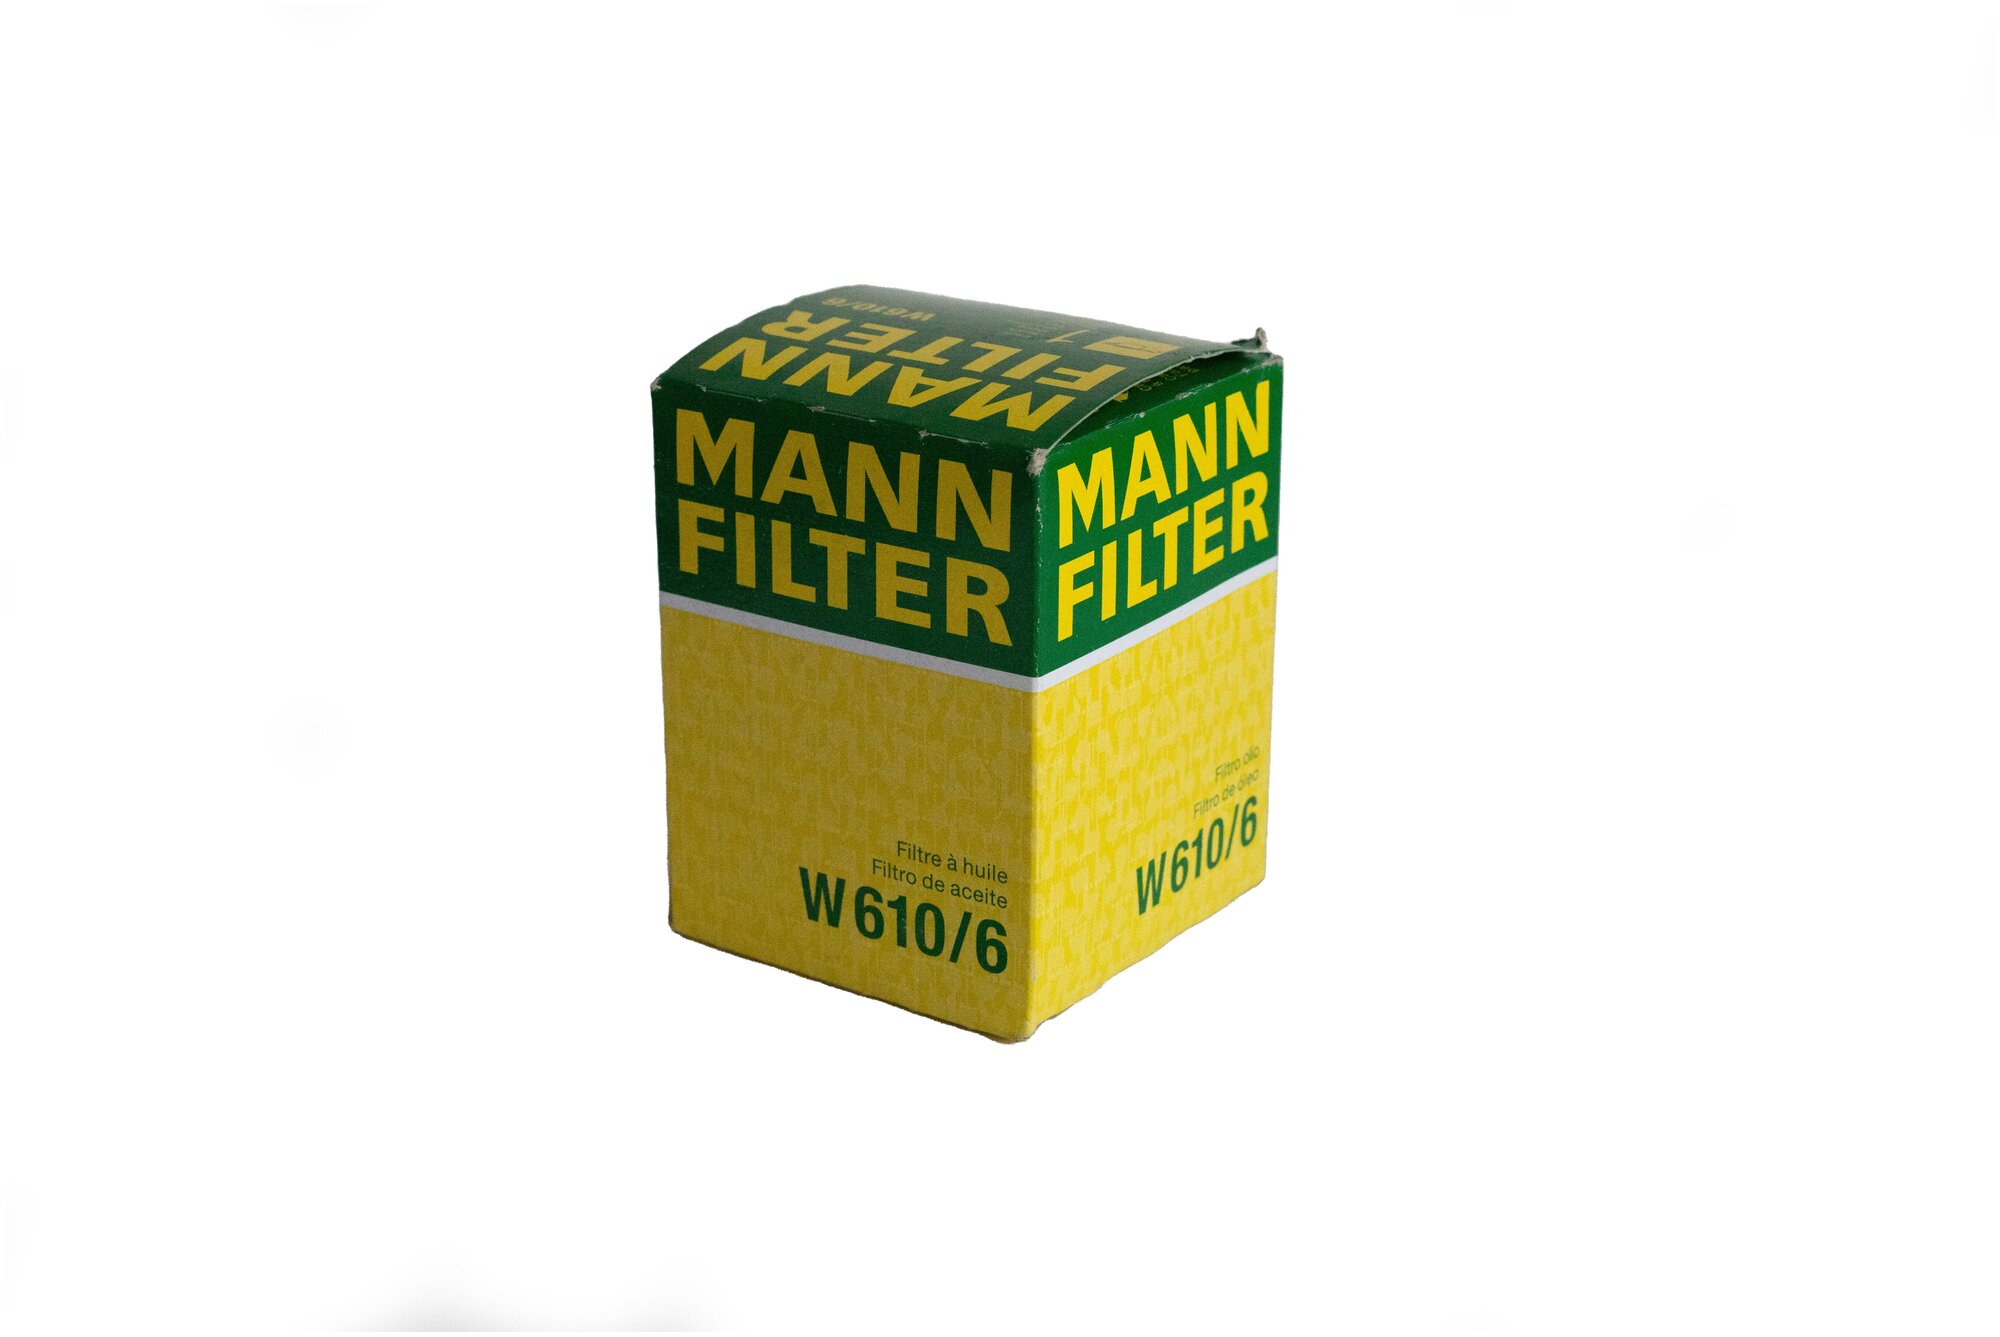 Фильтр маслянный двигателя MANN-FILTER - фото №8